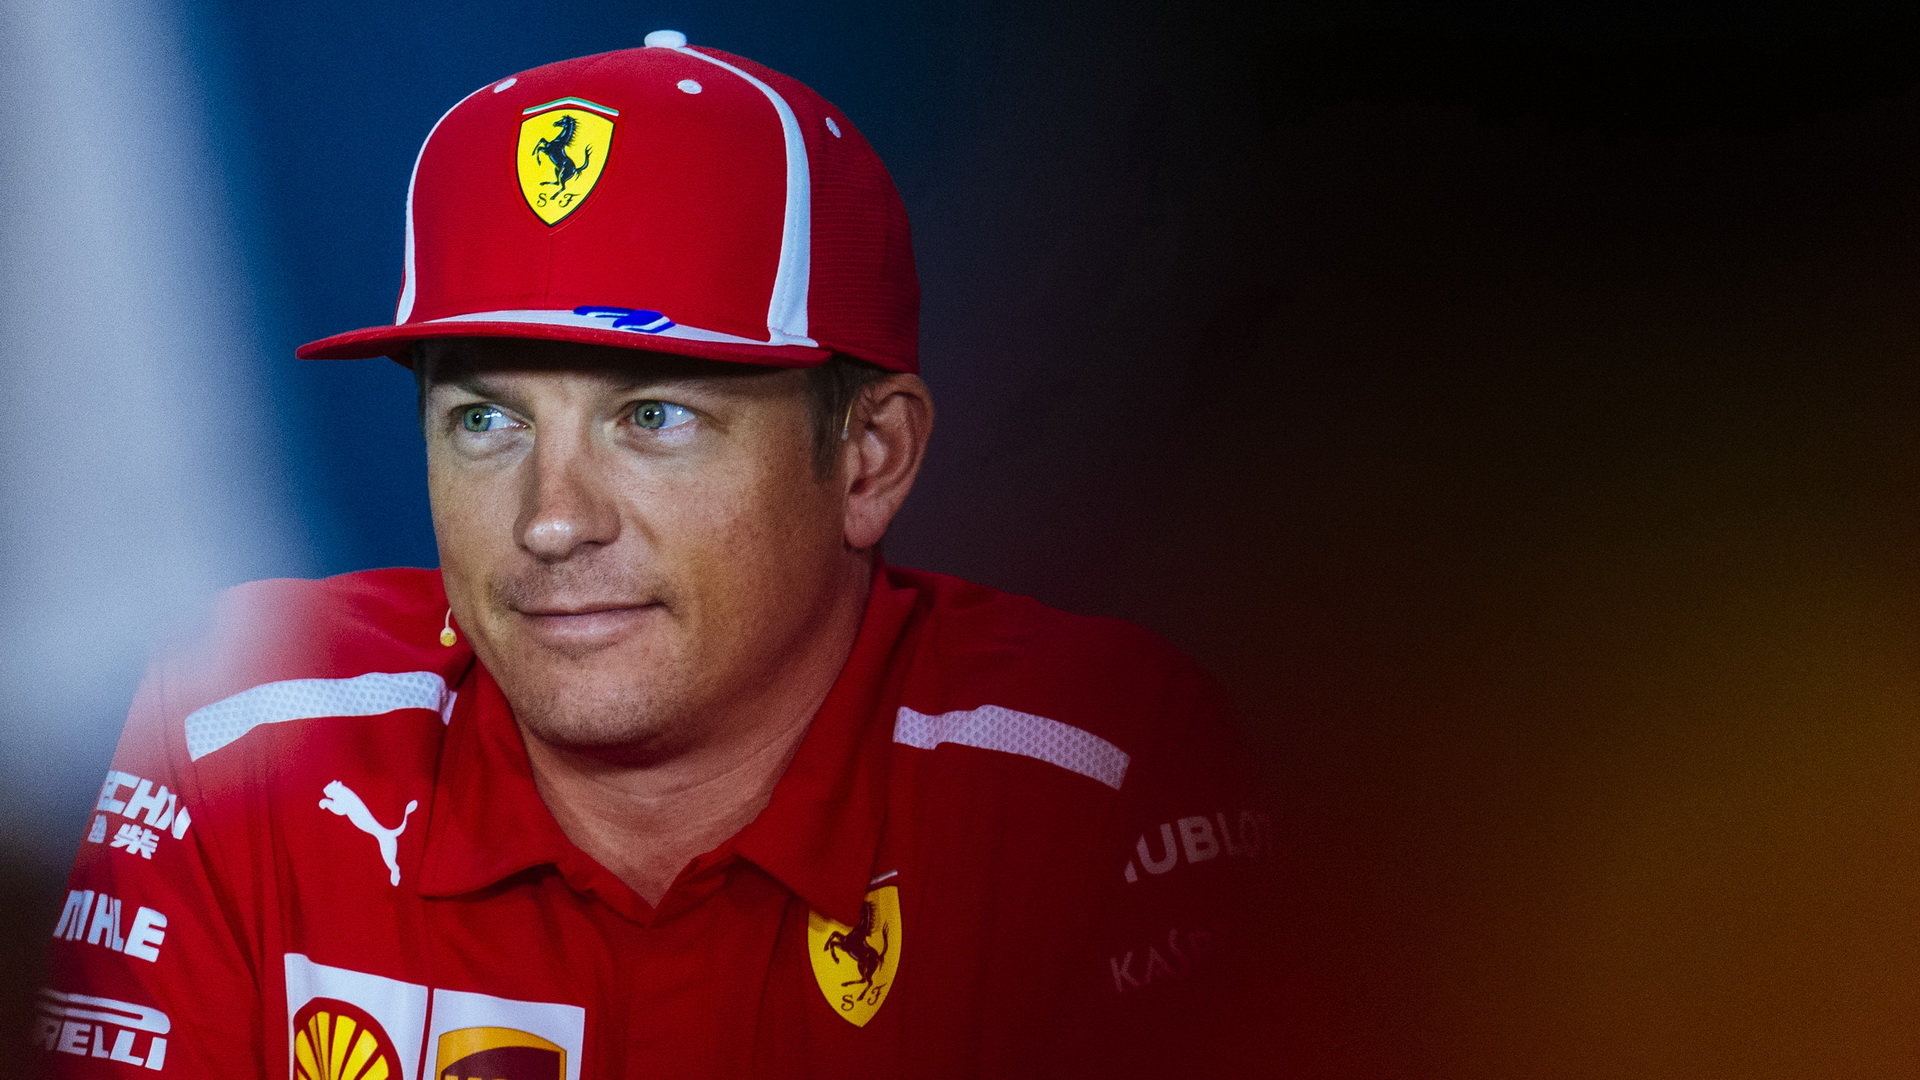 Kimi Räikkönen po pěti letech vystoupal na nejvyšší stupínek